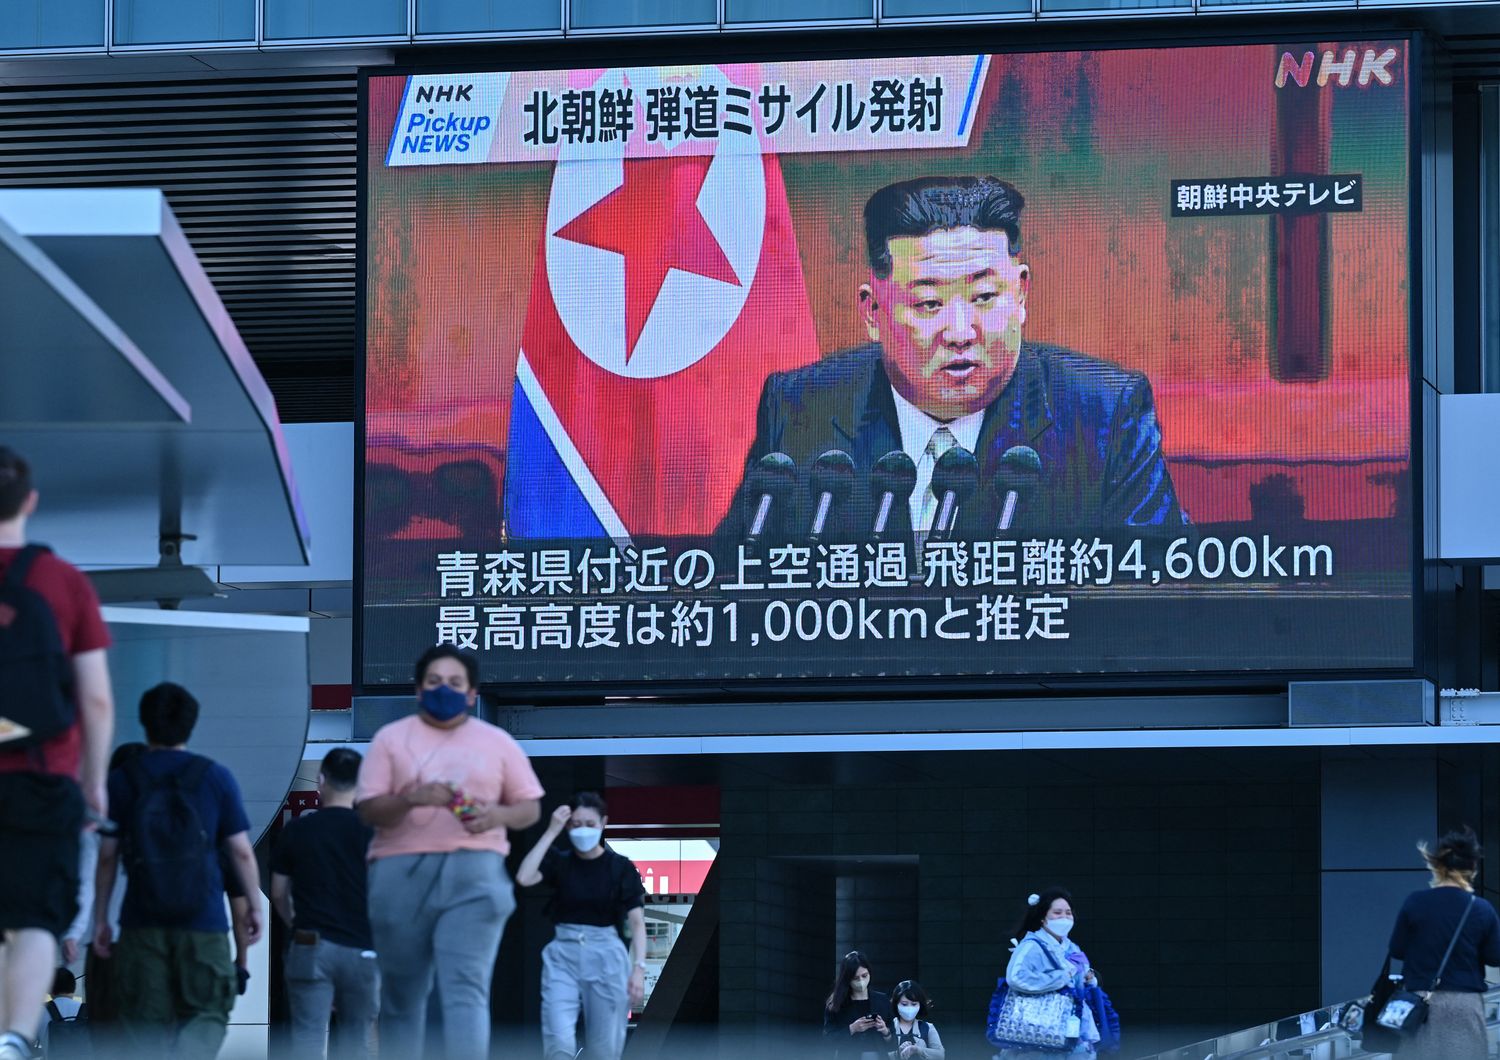 Nord Corea Kim vuole aumento produzione armi nucleari&nbsp;